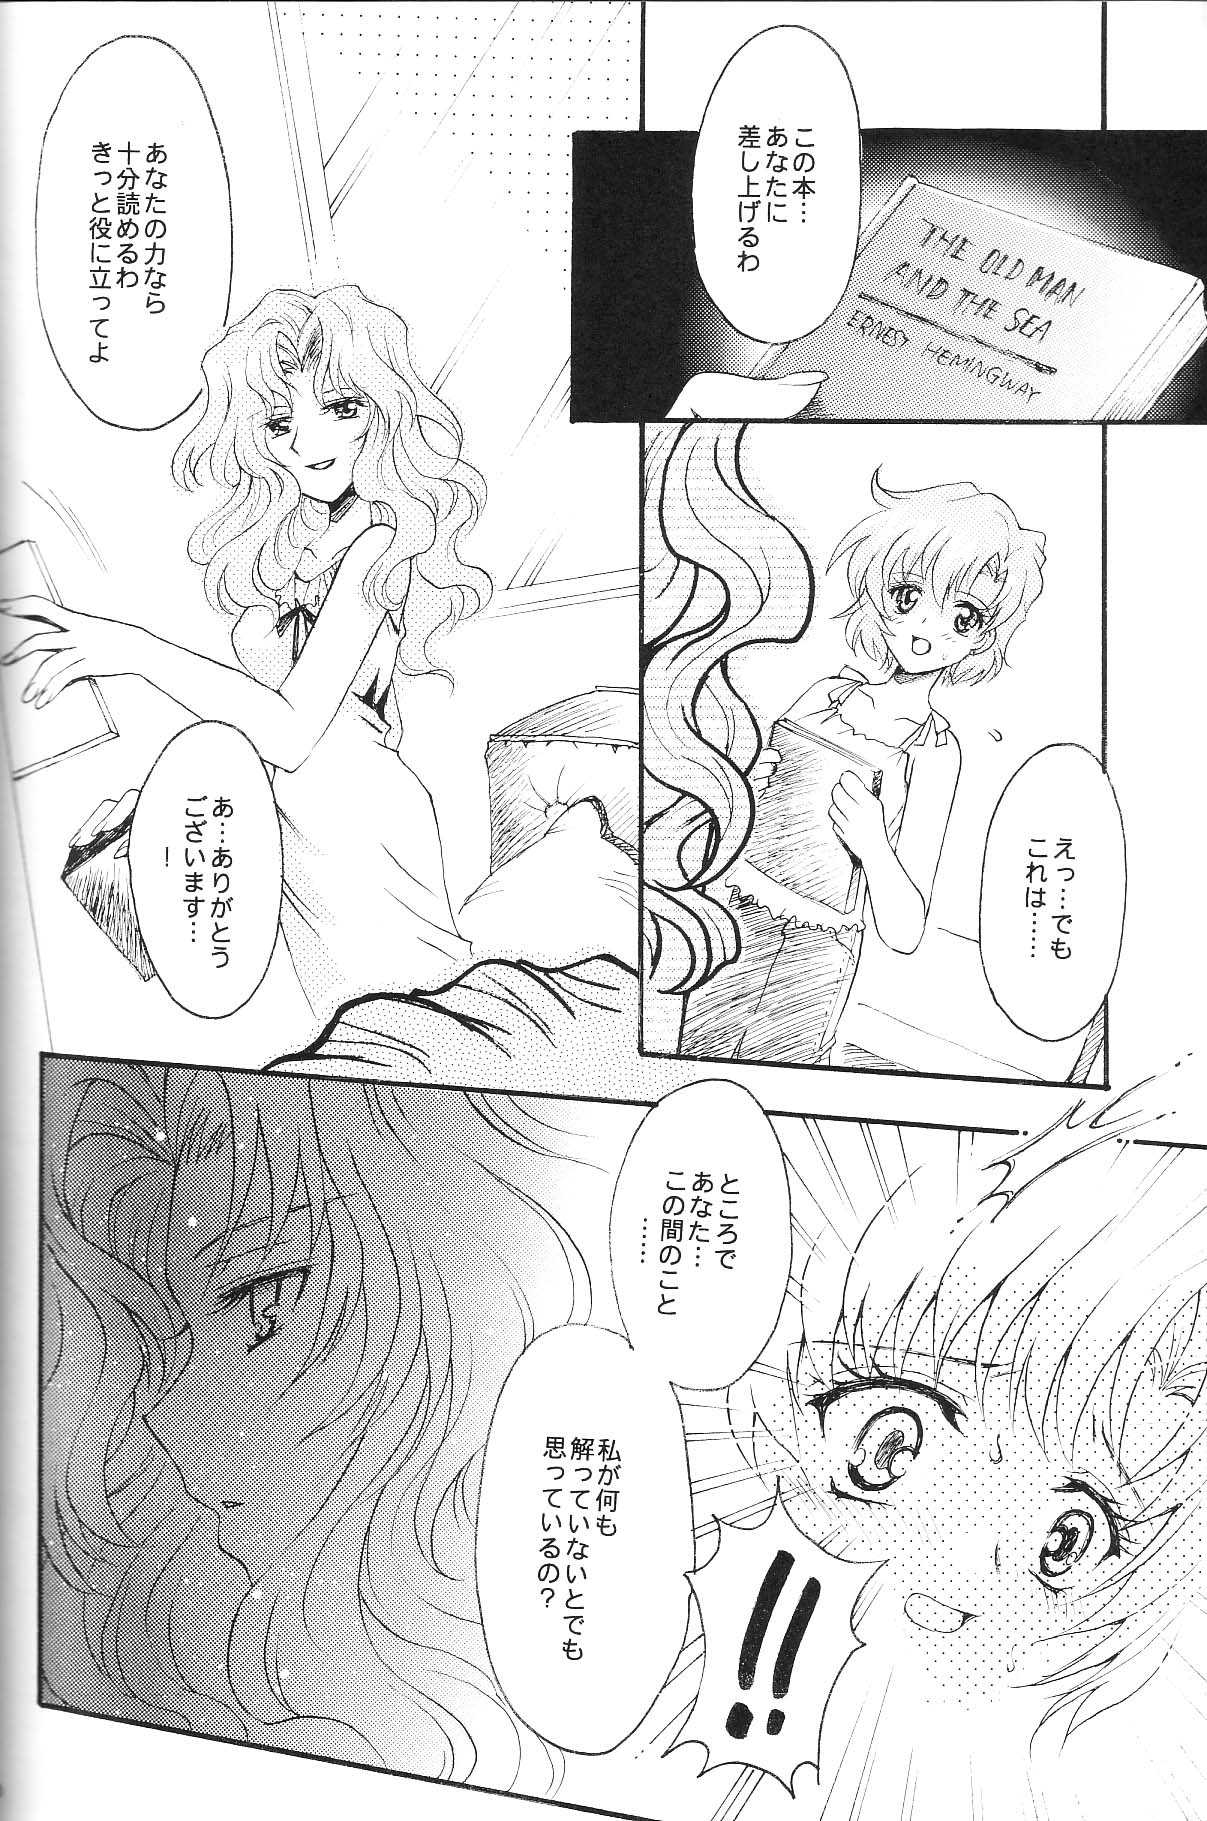 [Kotori Jimusho] Ave Maris Stella 3 (Sailor Moon) 